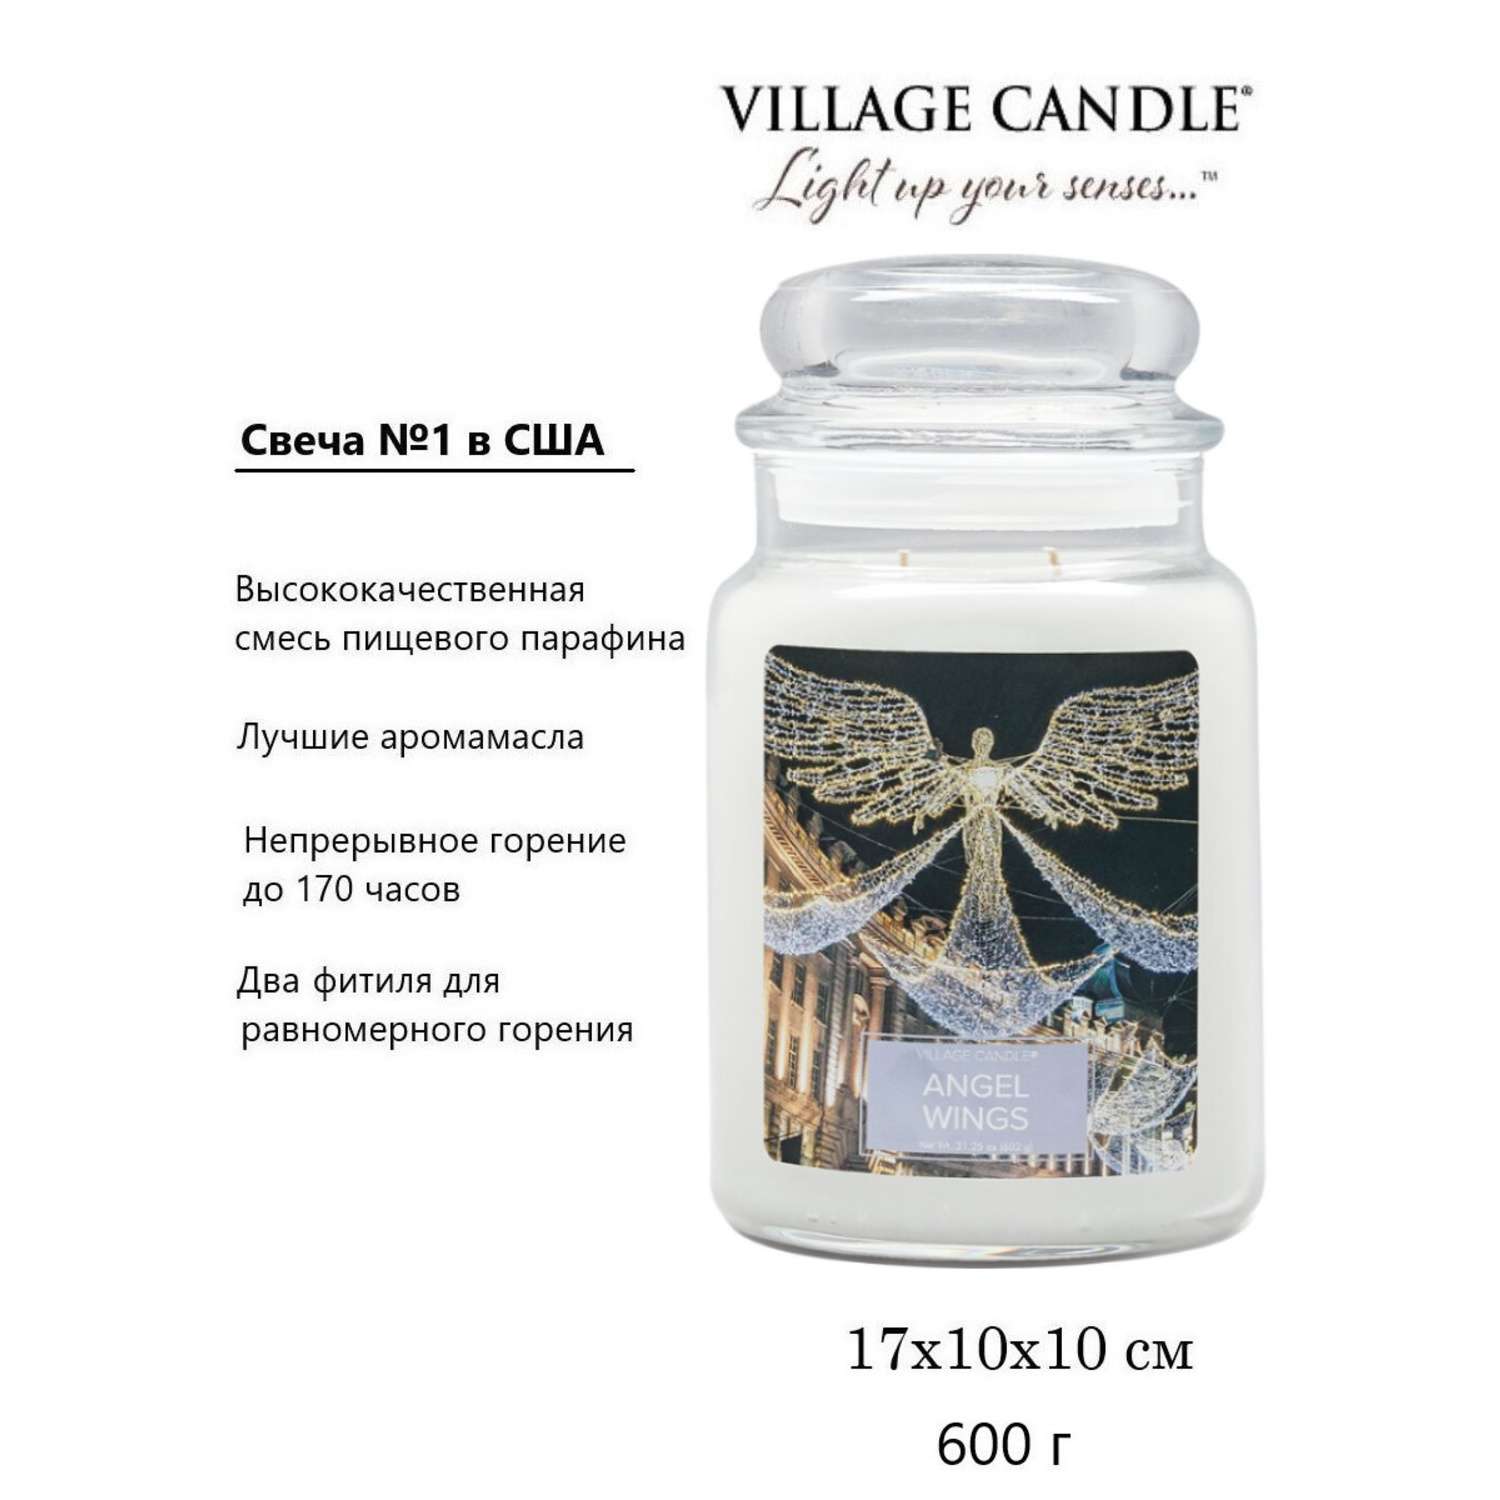 Свеча Village Candle ароматическая Крылья Ангела 4260179 - фото 3